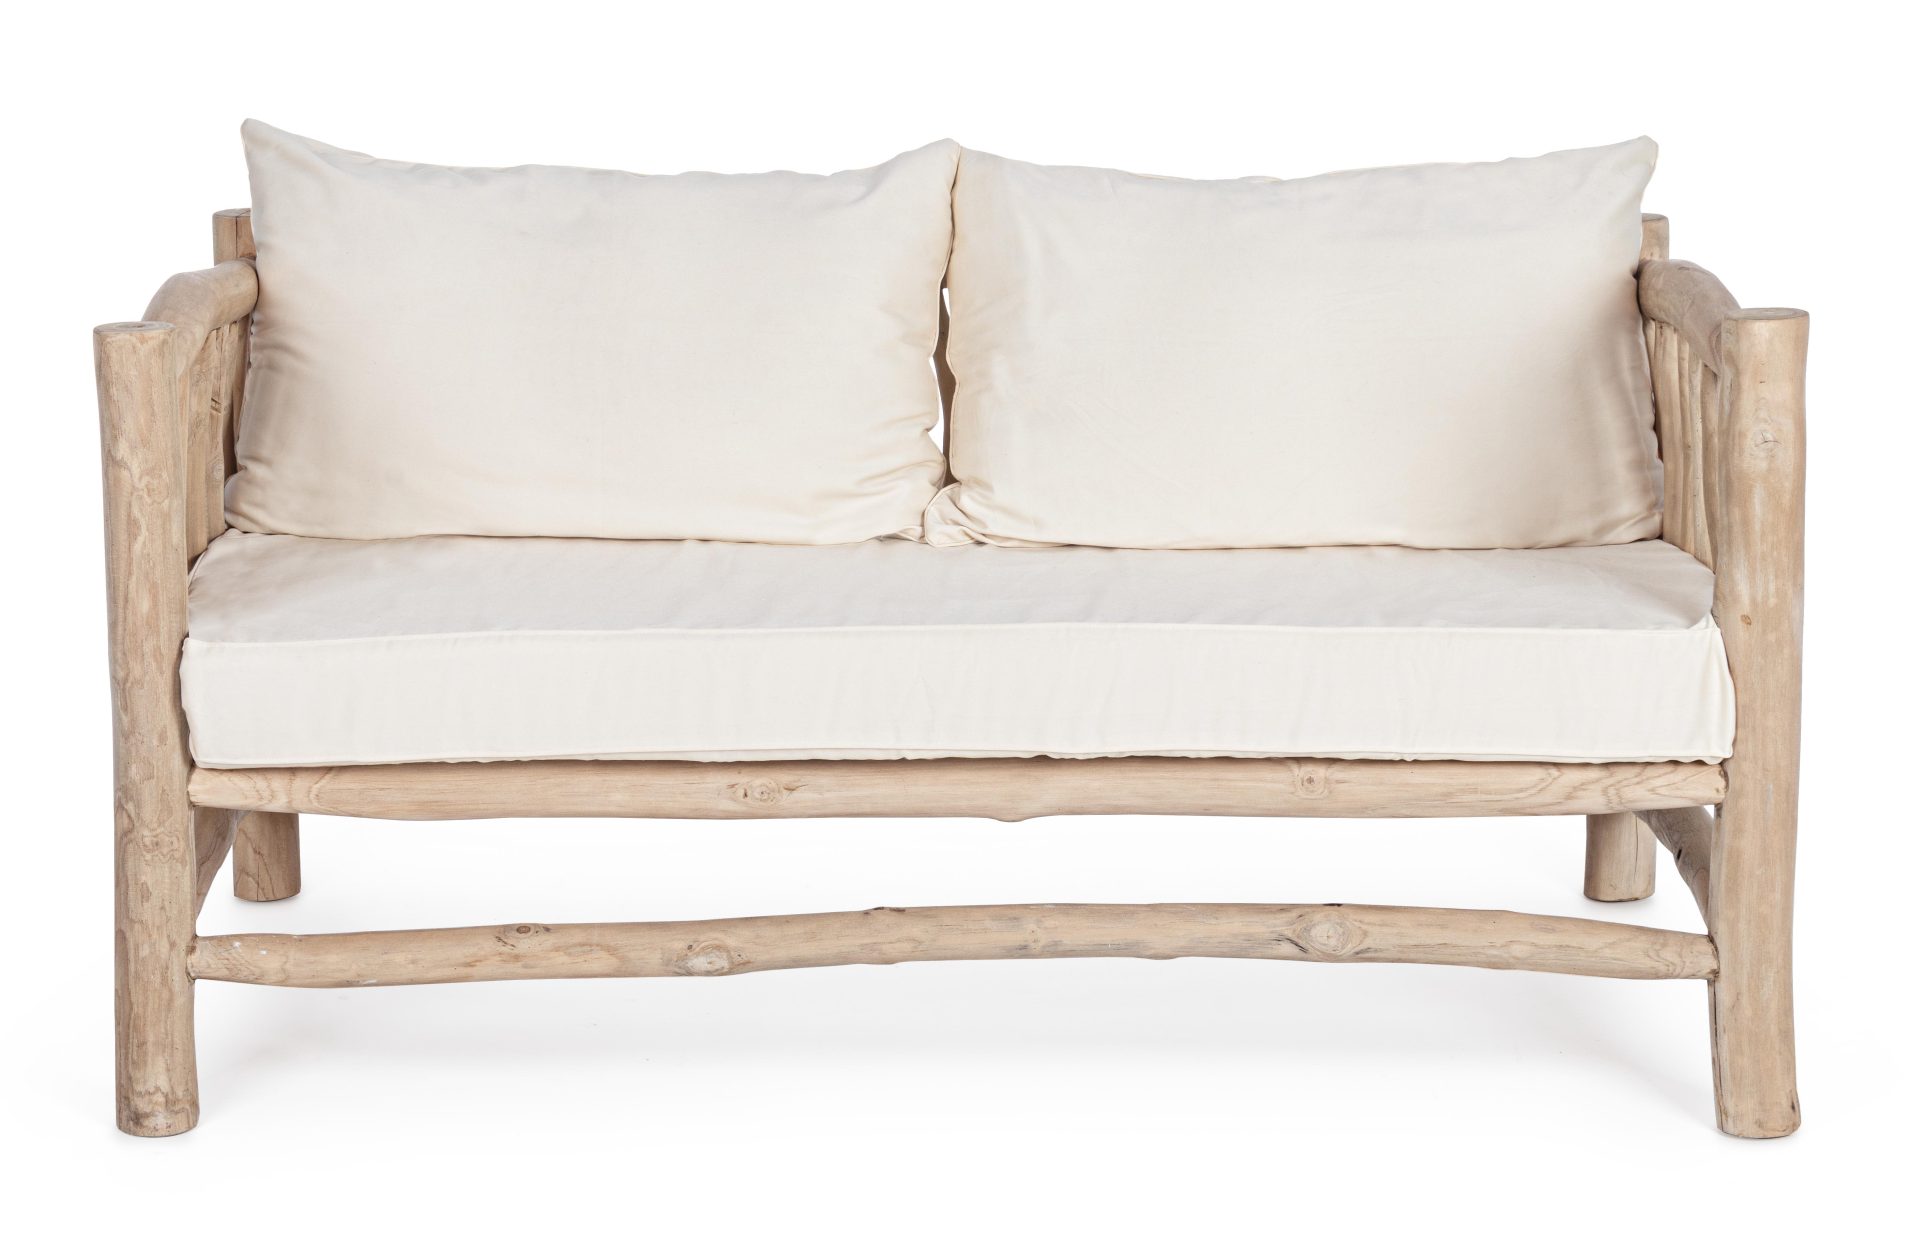 Das Sofa Sahel überzeugt mit seinem klassischen Design. Gefertigt wurde es aus Teakholz, welches einen natürlichen Farbton besitzt. Die Kissen sind aus einem Mix aus Baumwolle und Leinen. Das Sofa ist in der Ausführung als 2-Sitzer. Die Breite beträgt 140